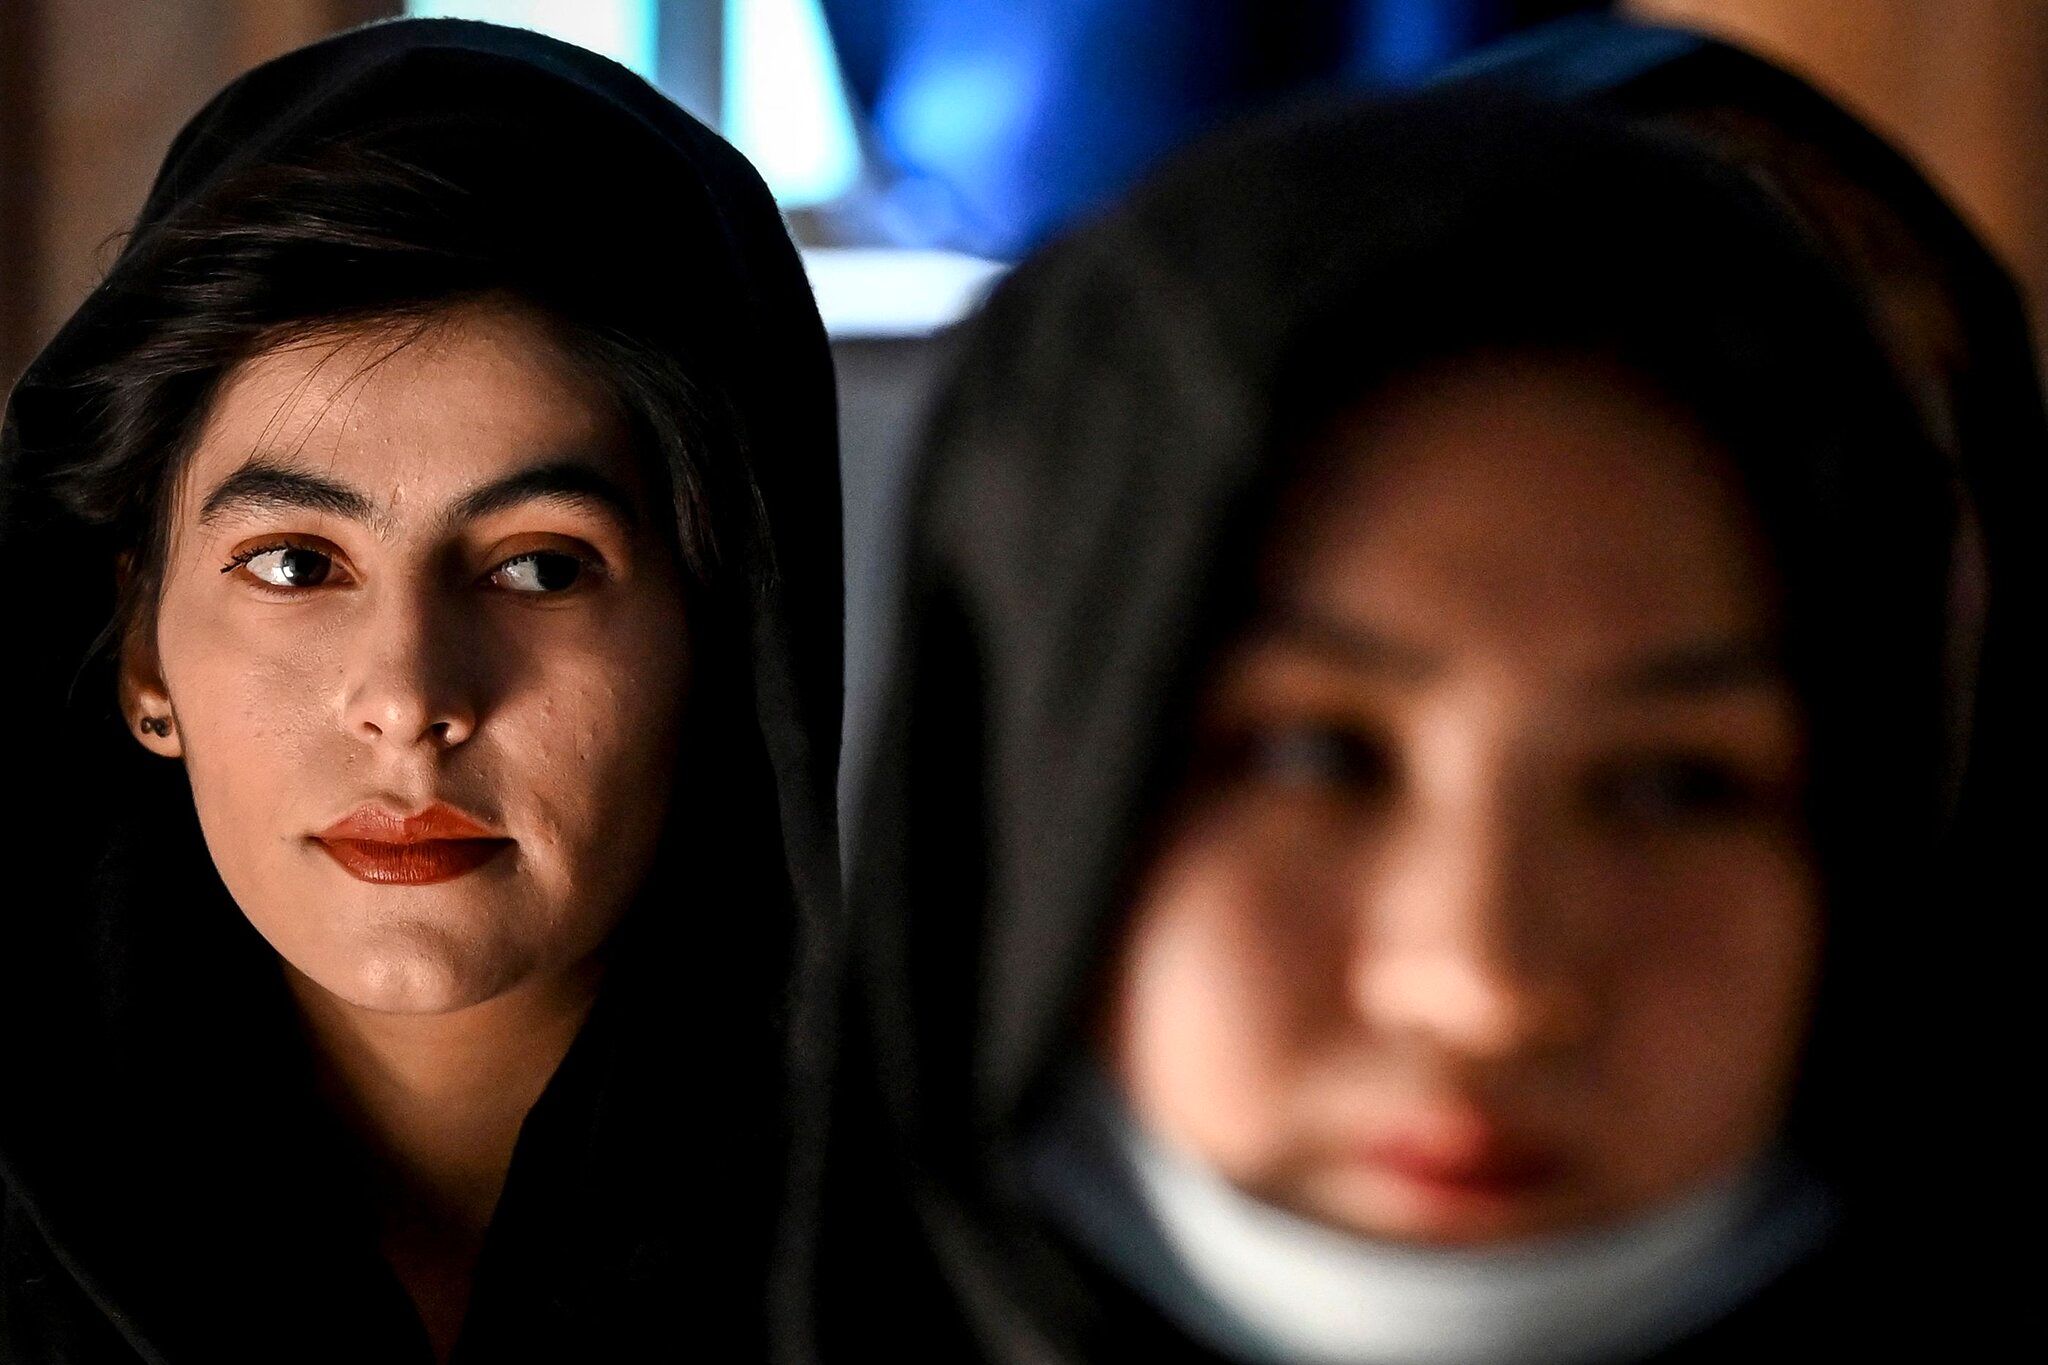 طالبان به زنان کارمند اجازه ورود به محل کار نداد+ فیلم